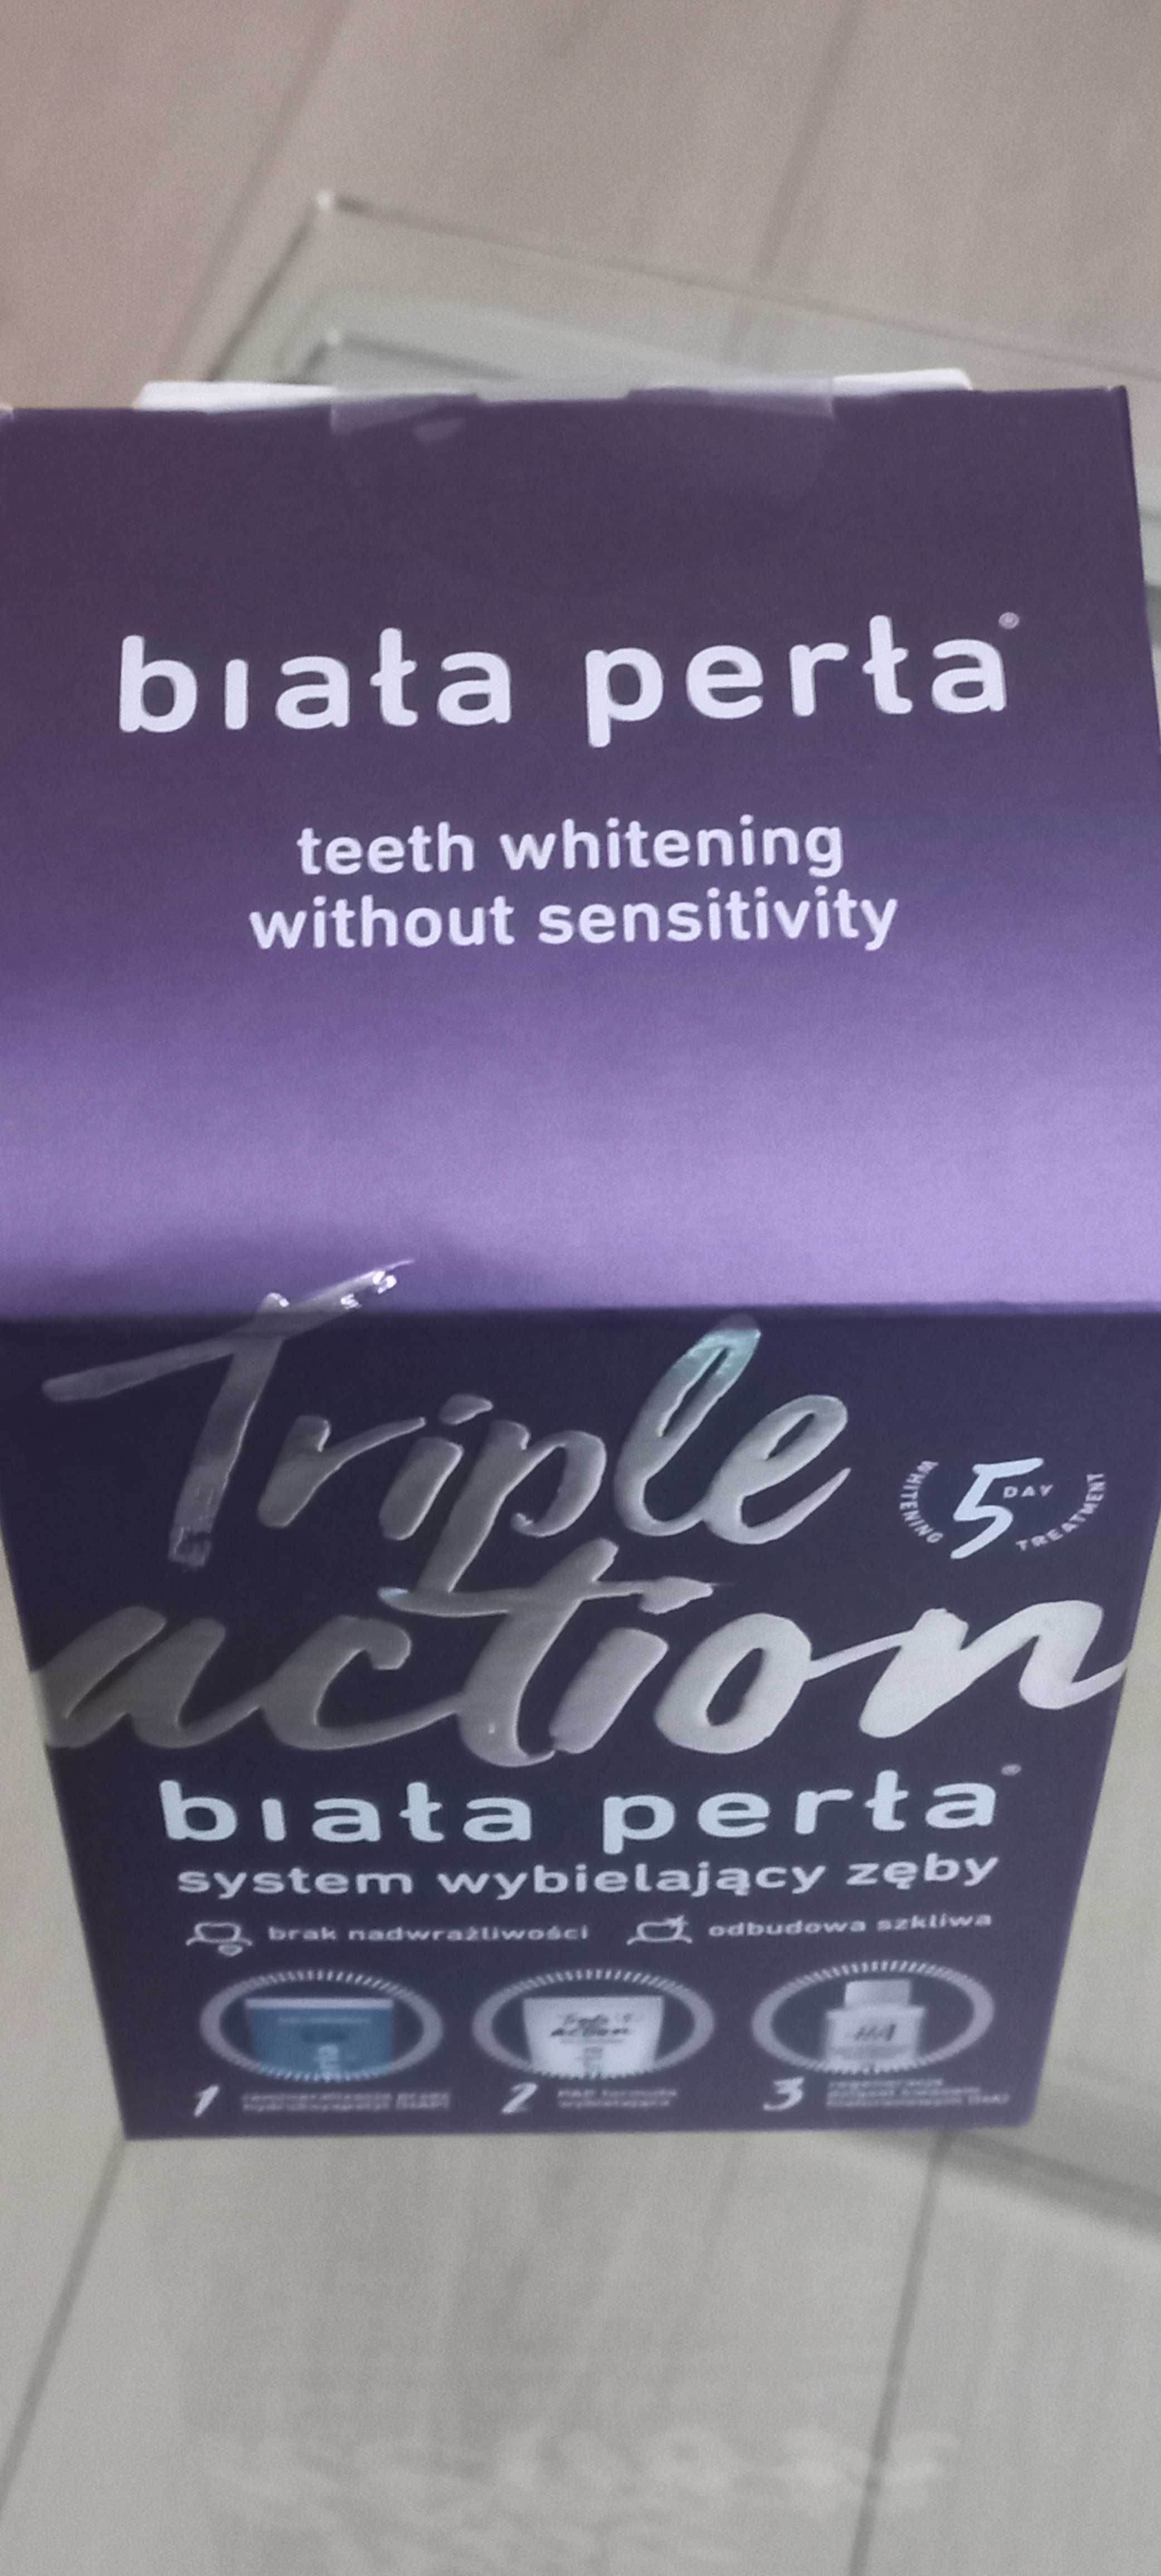 Triple action wybielanie zęby  biała perła nakładki